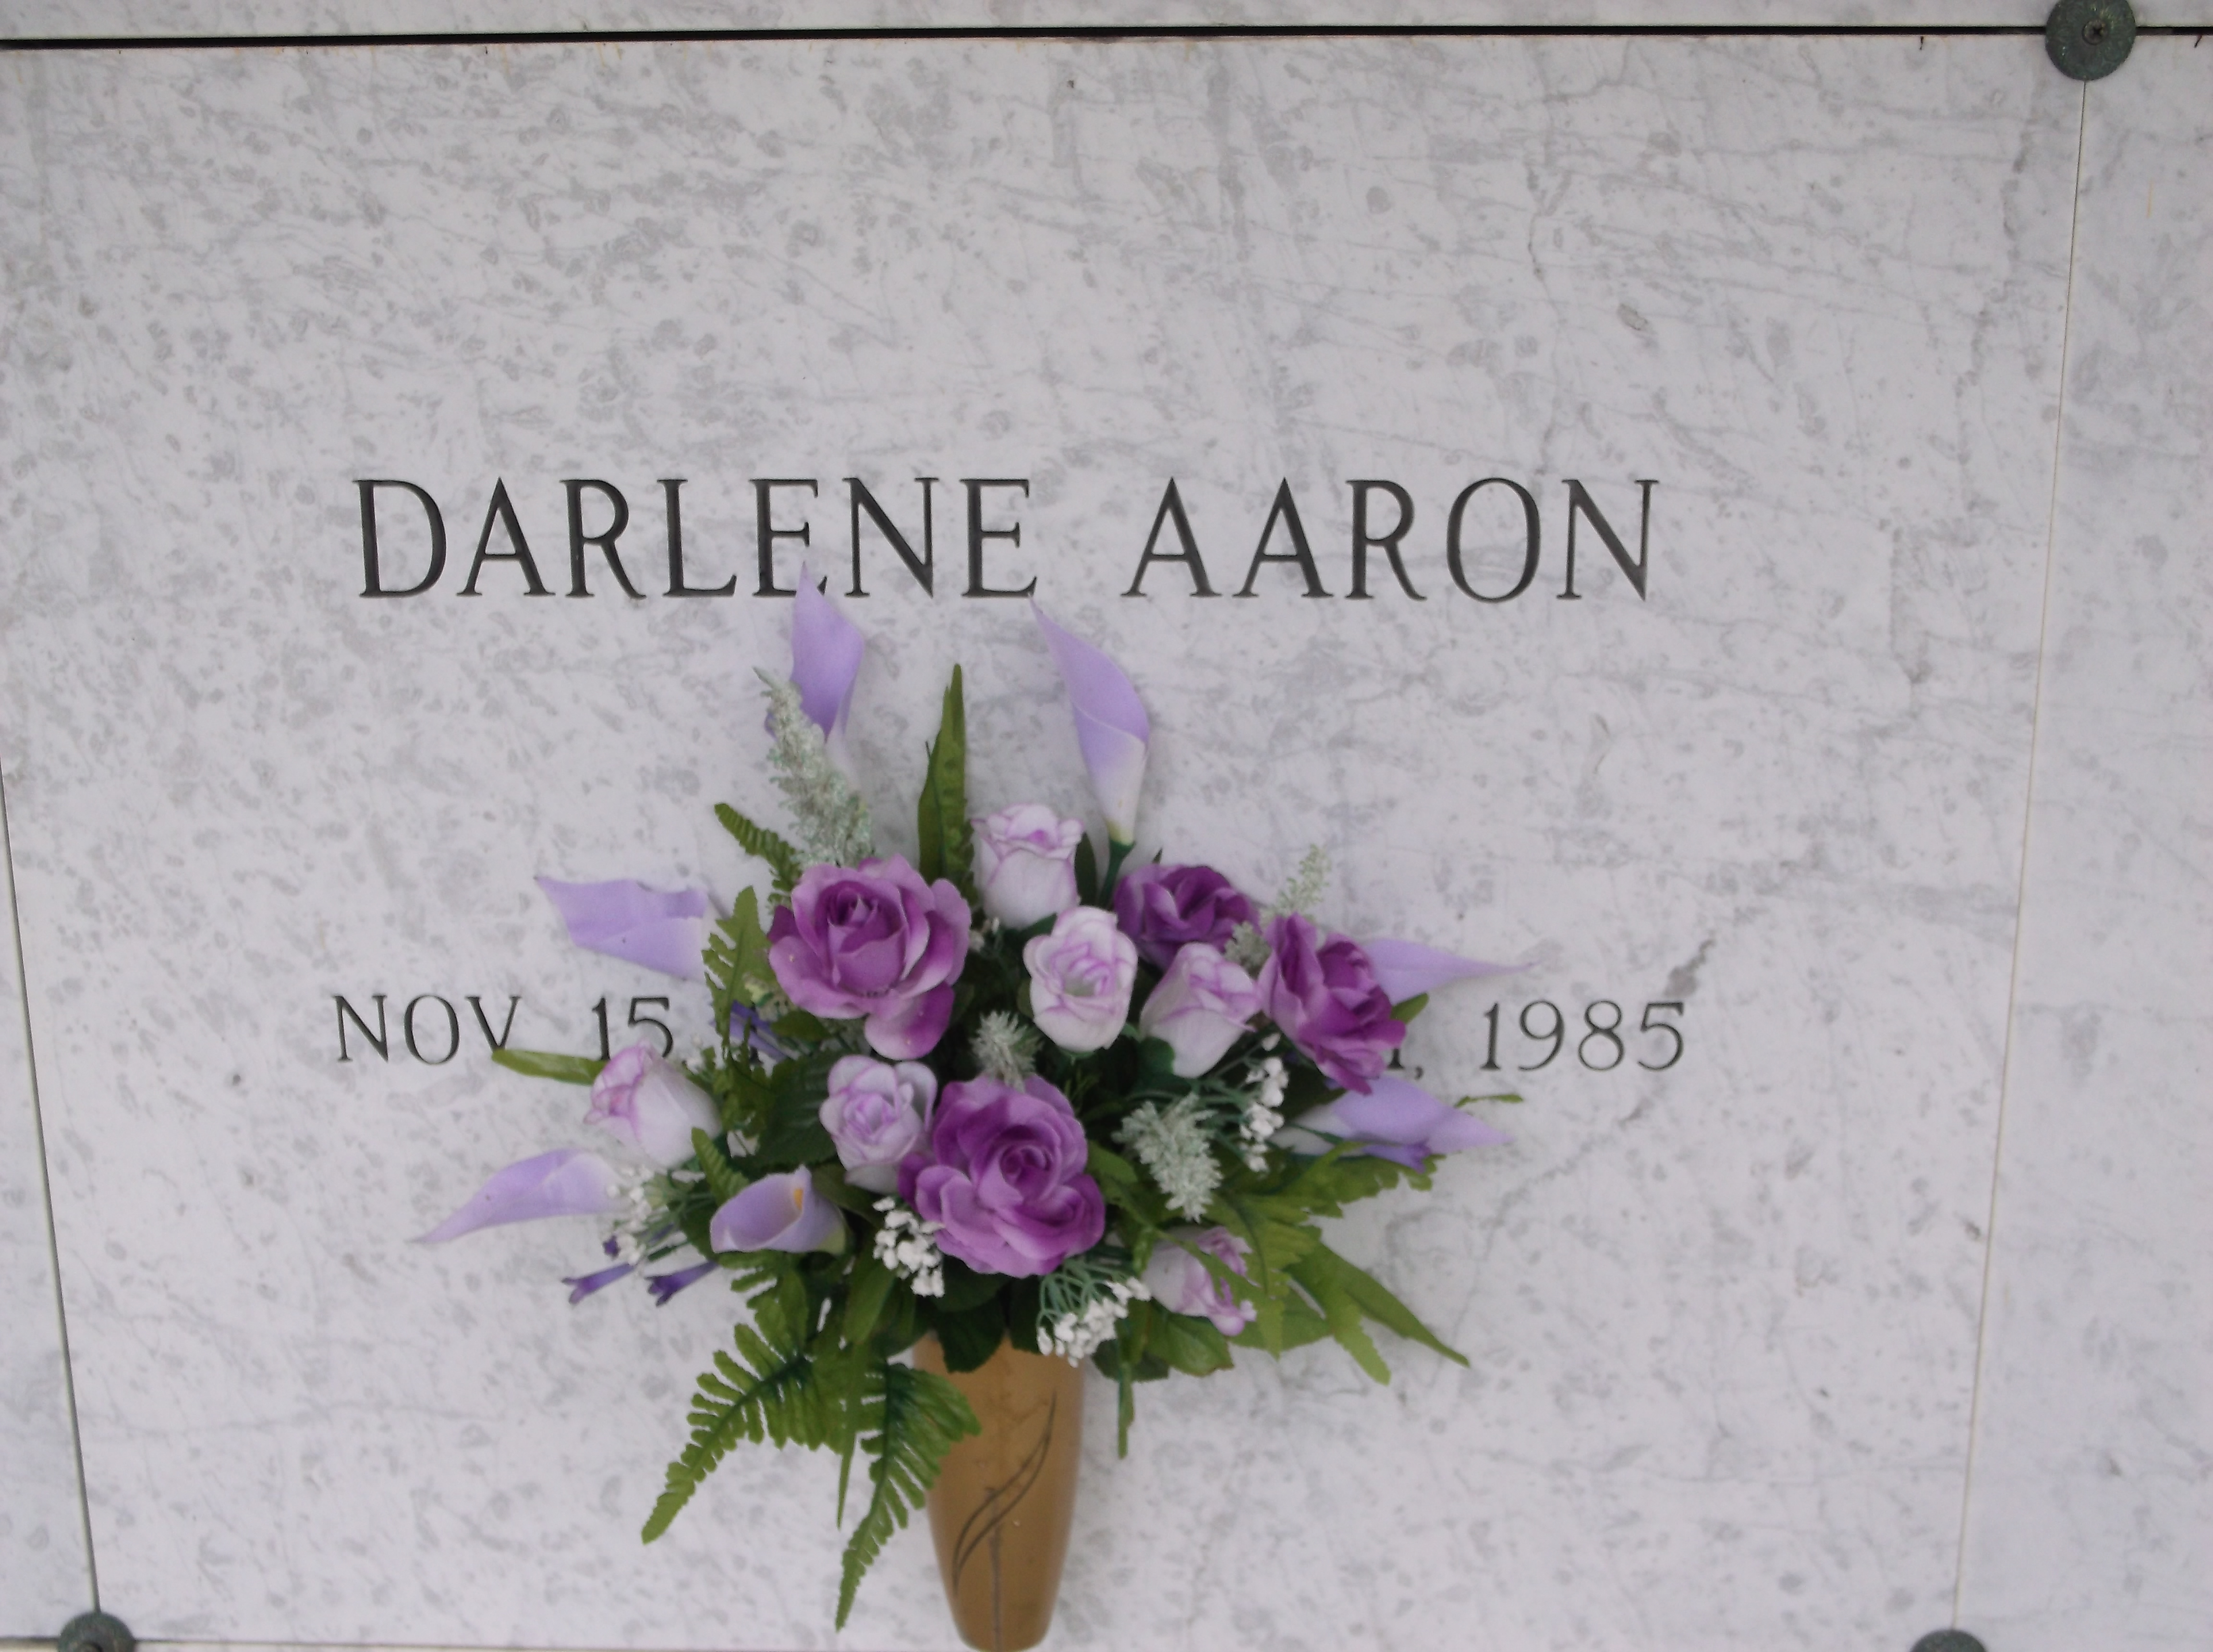 Darlene Aaron